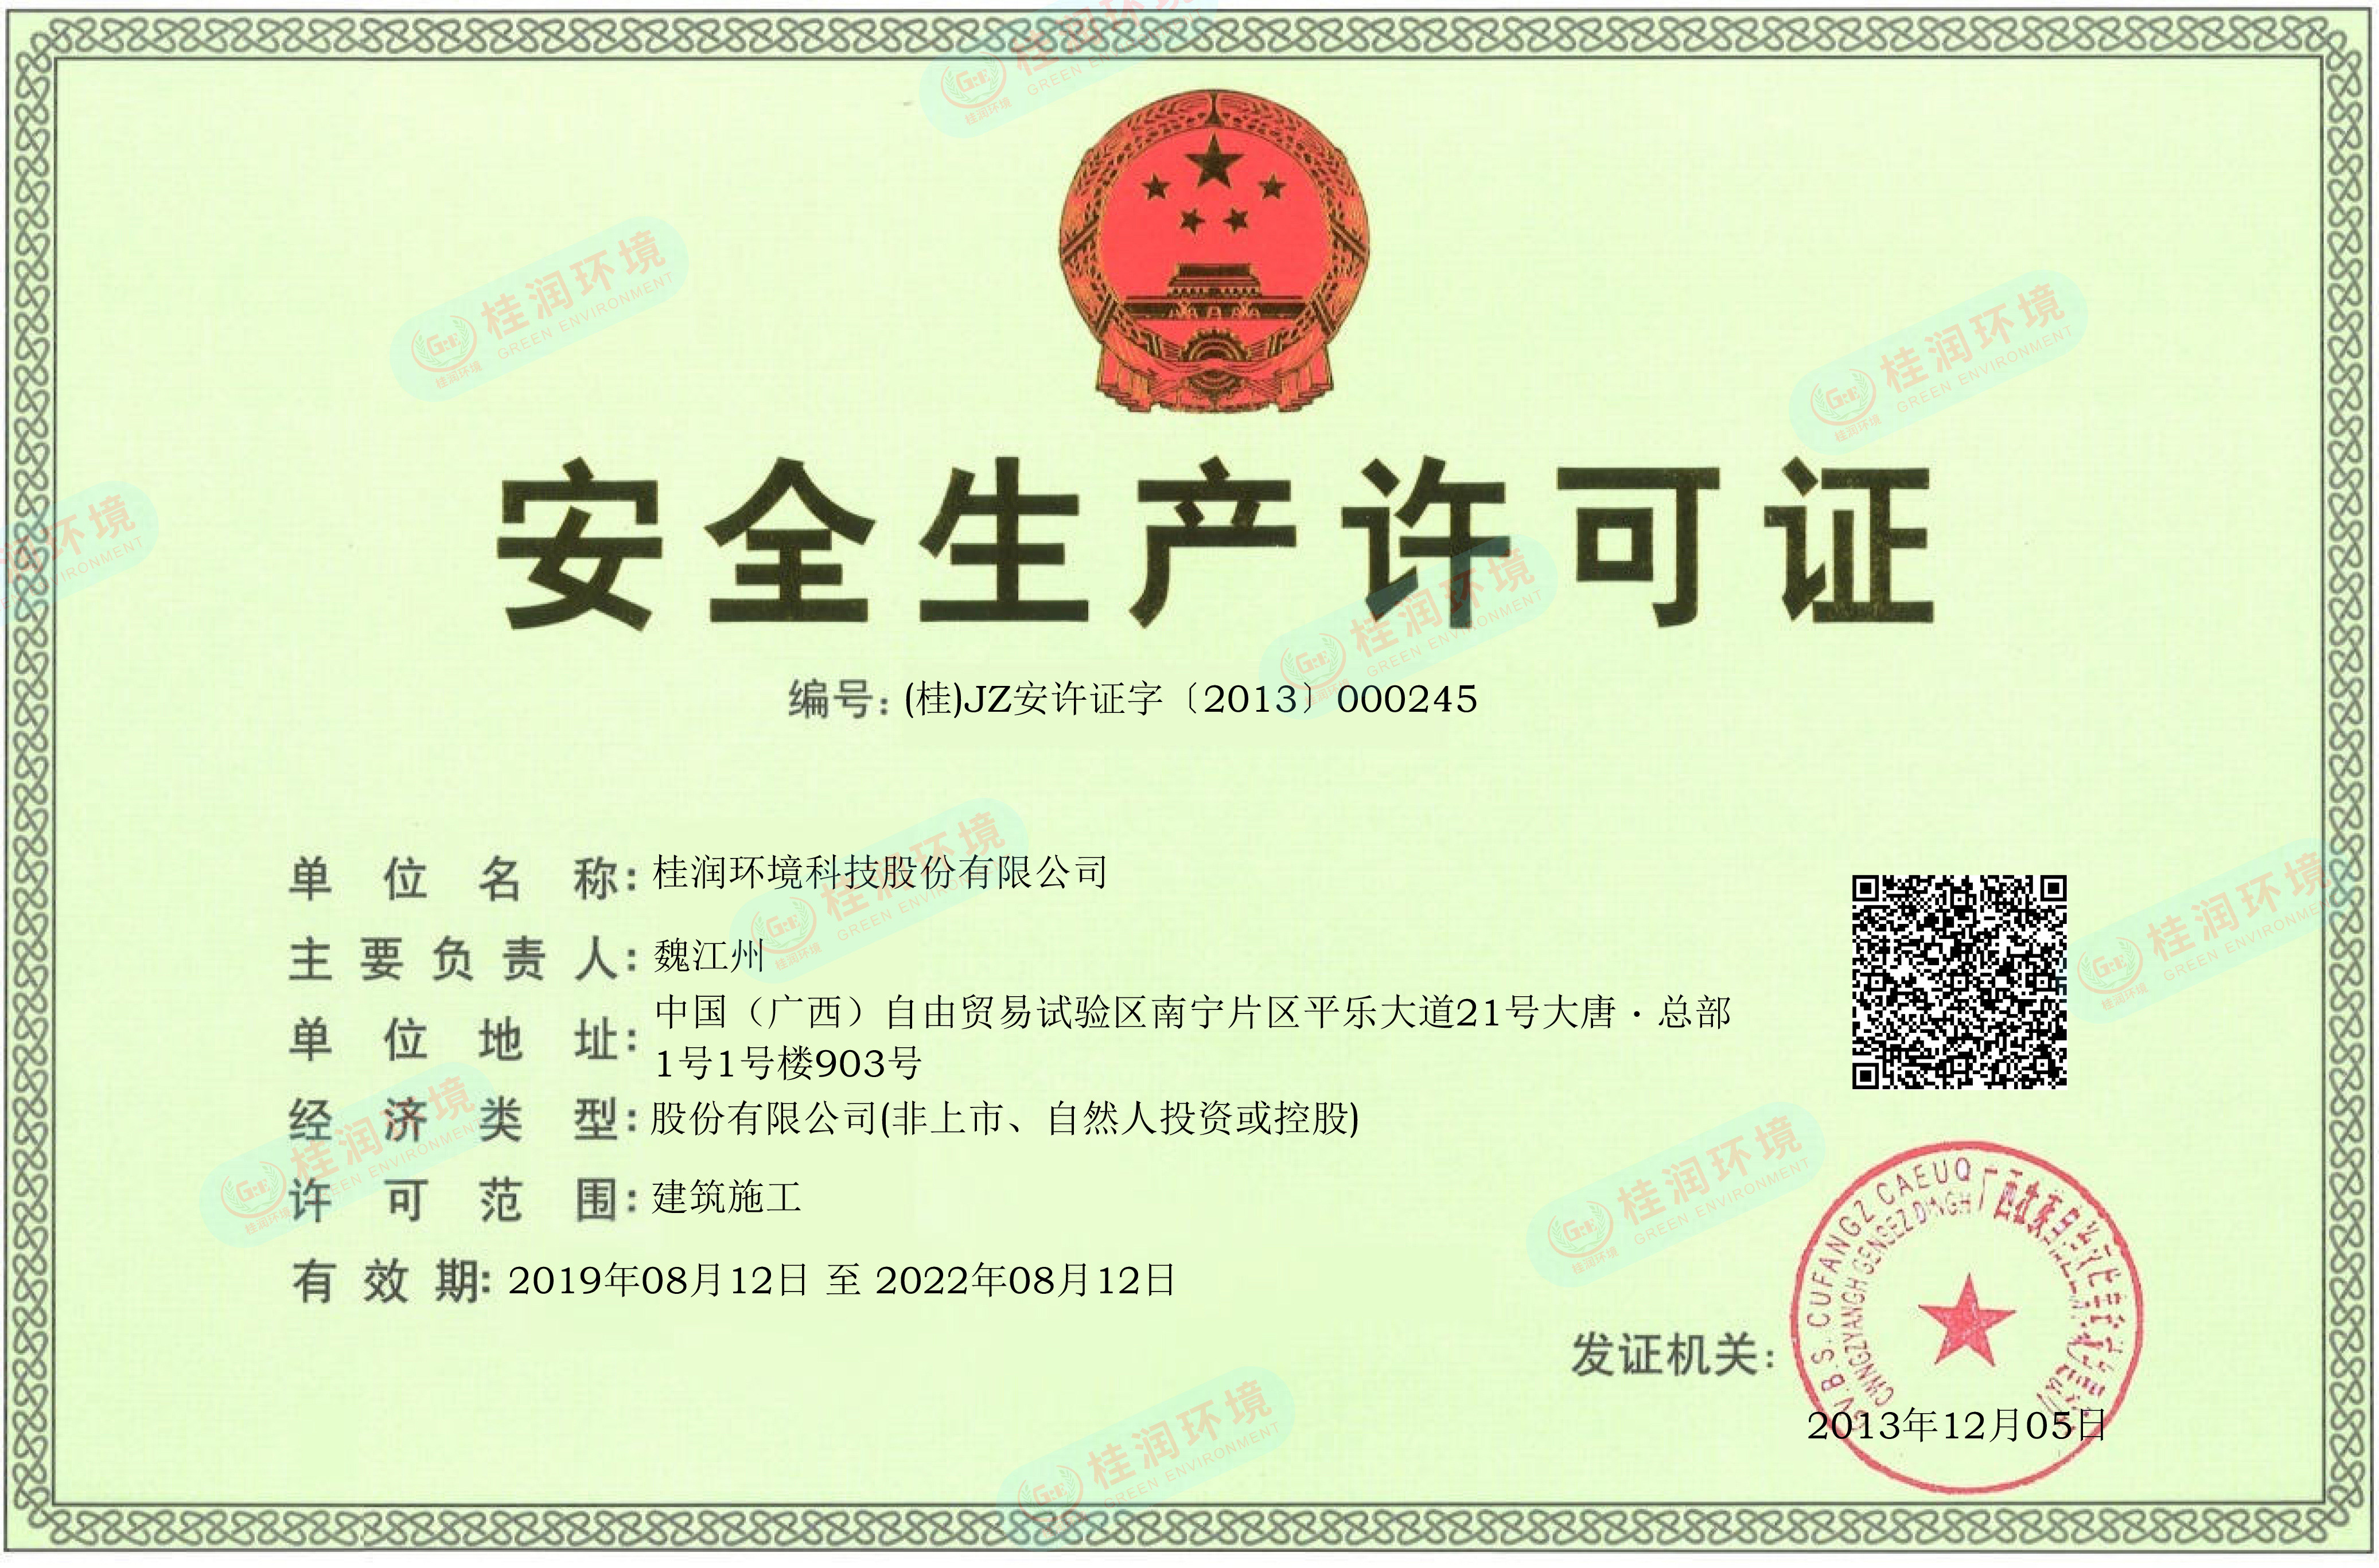 安全生产许可证电子证-水印.jpg